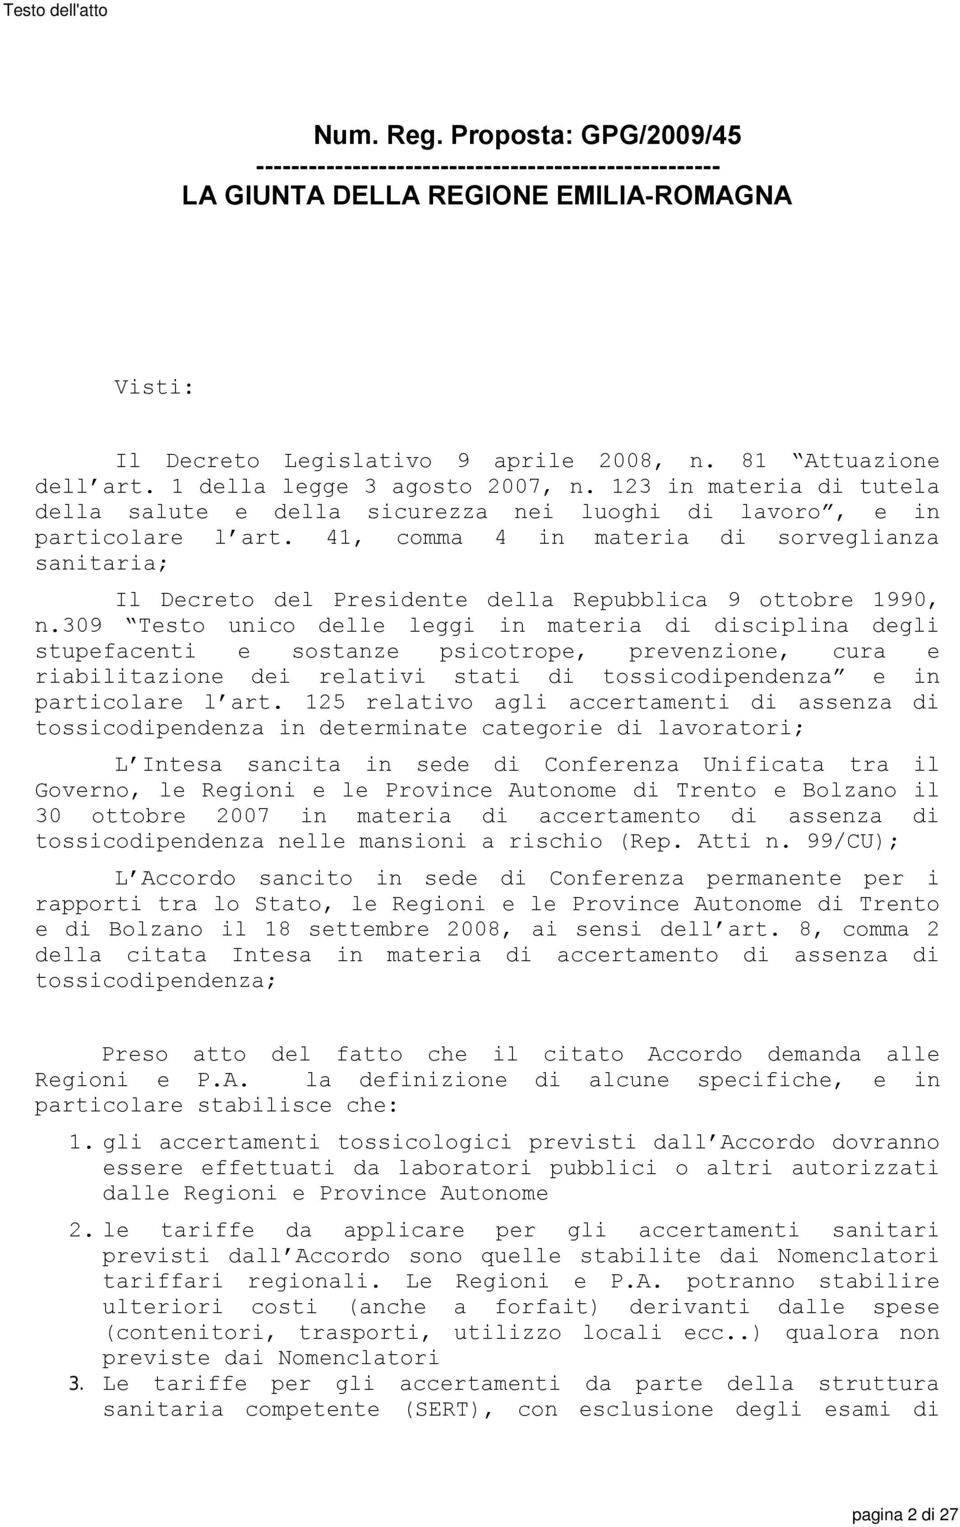 41, comma 4 in materia di sorveglianza sanitaria; Il Decreto del Presidente della Repubblica 9 ottobre 1990, n.